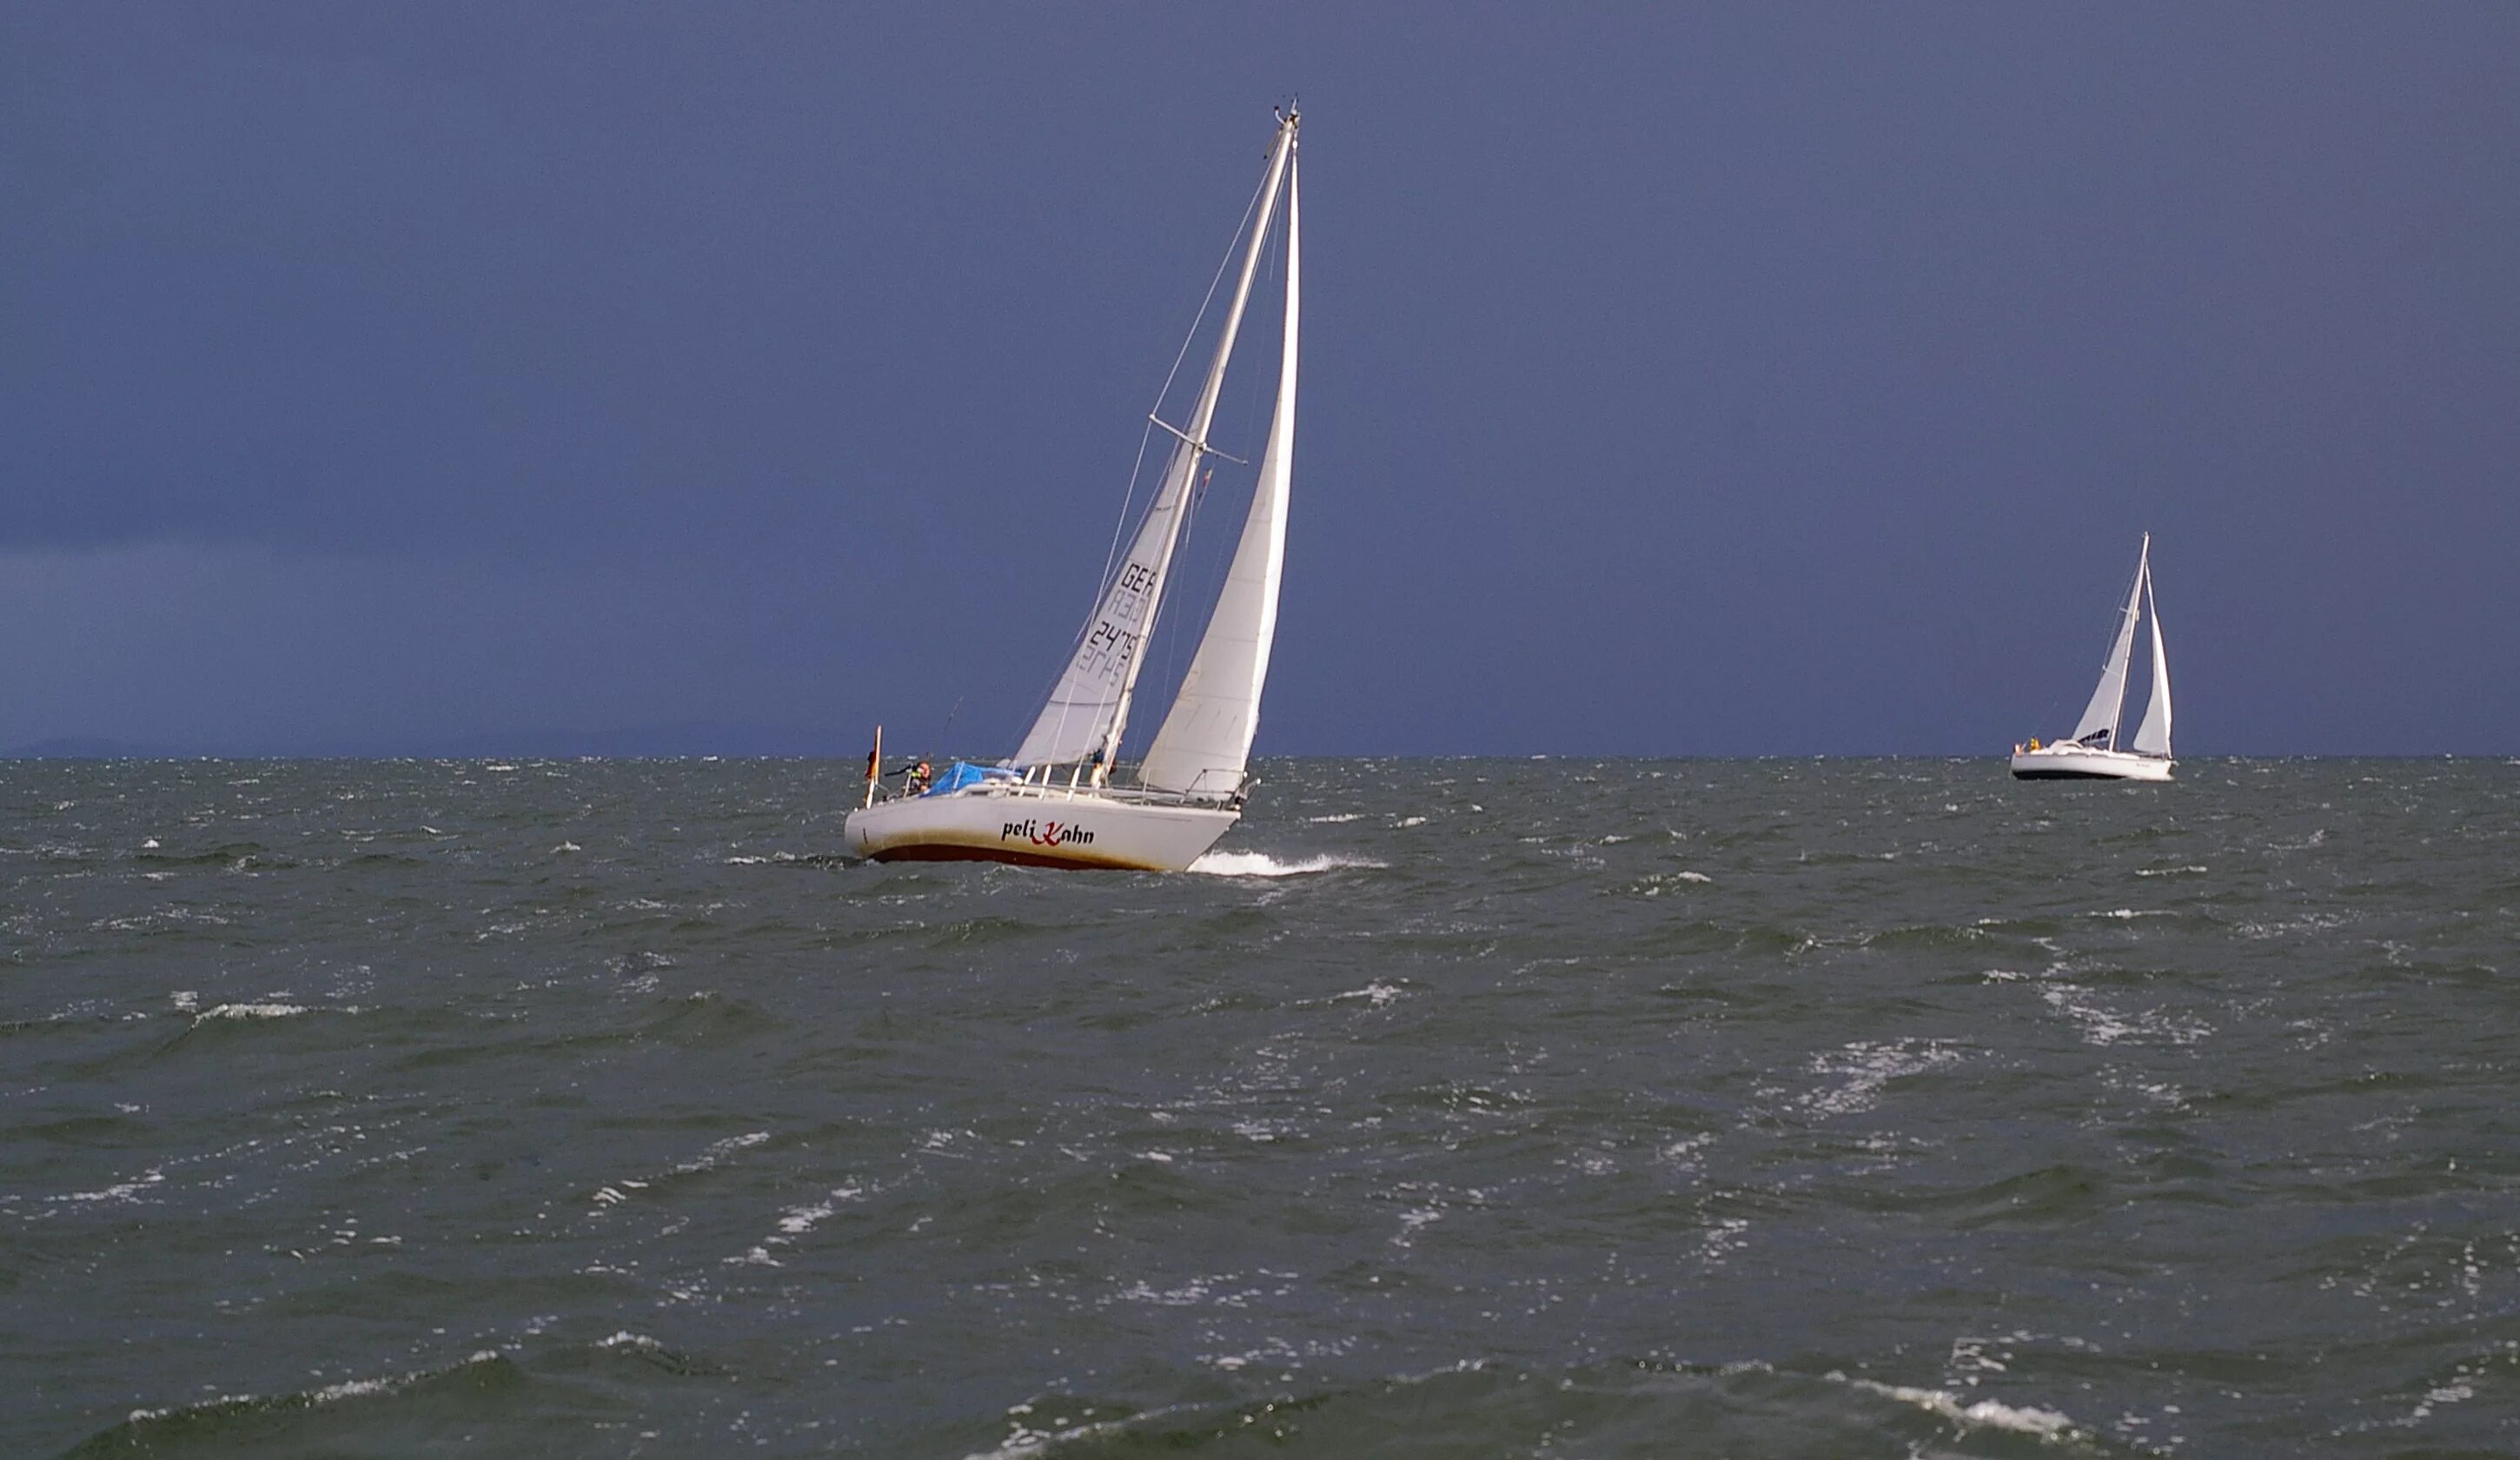 Плыли мы на лодке ветер мачту рвал. Парусные яхты в шторм. Парусная регата в шторм. Регата в дождь. Балтийское море яхты.